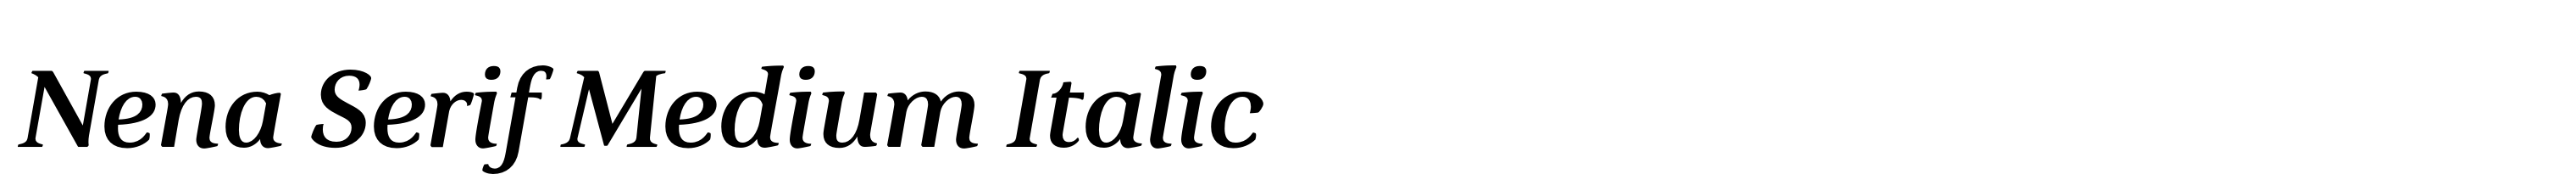 Nena Serif Medium Italic